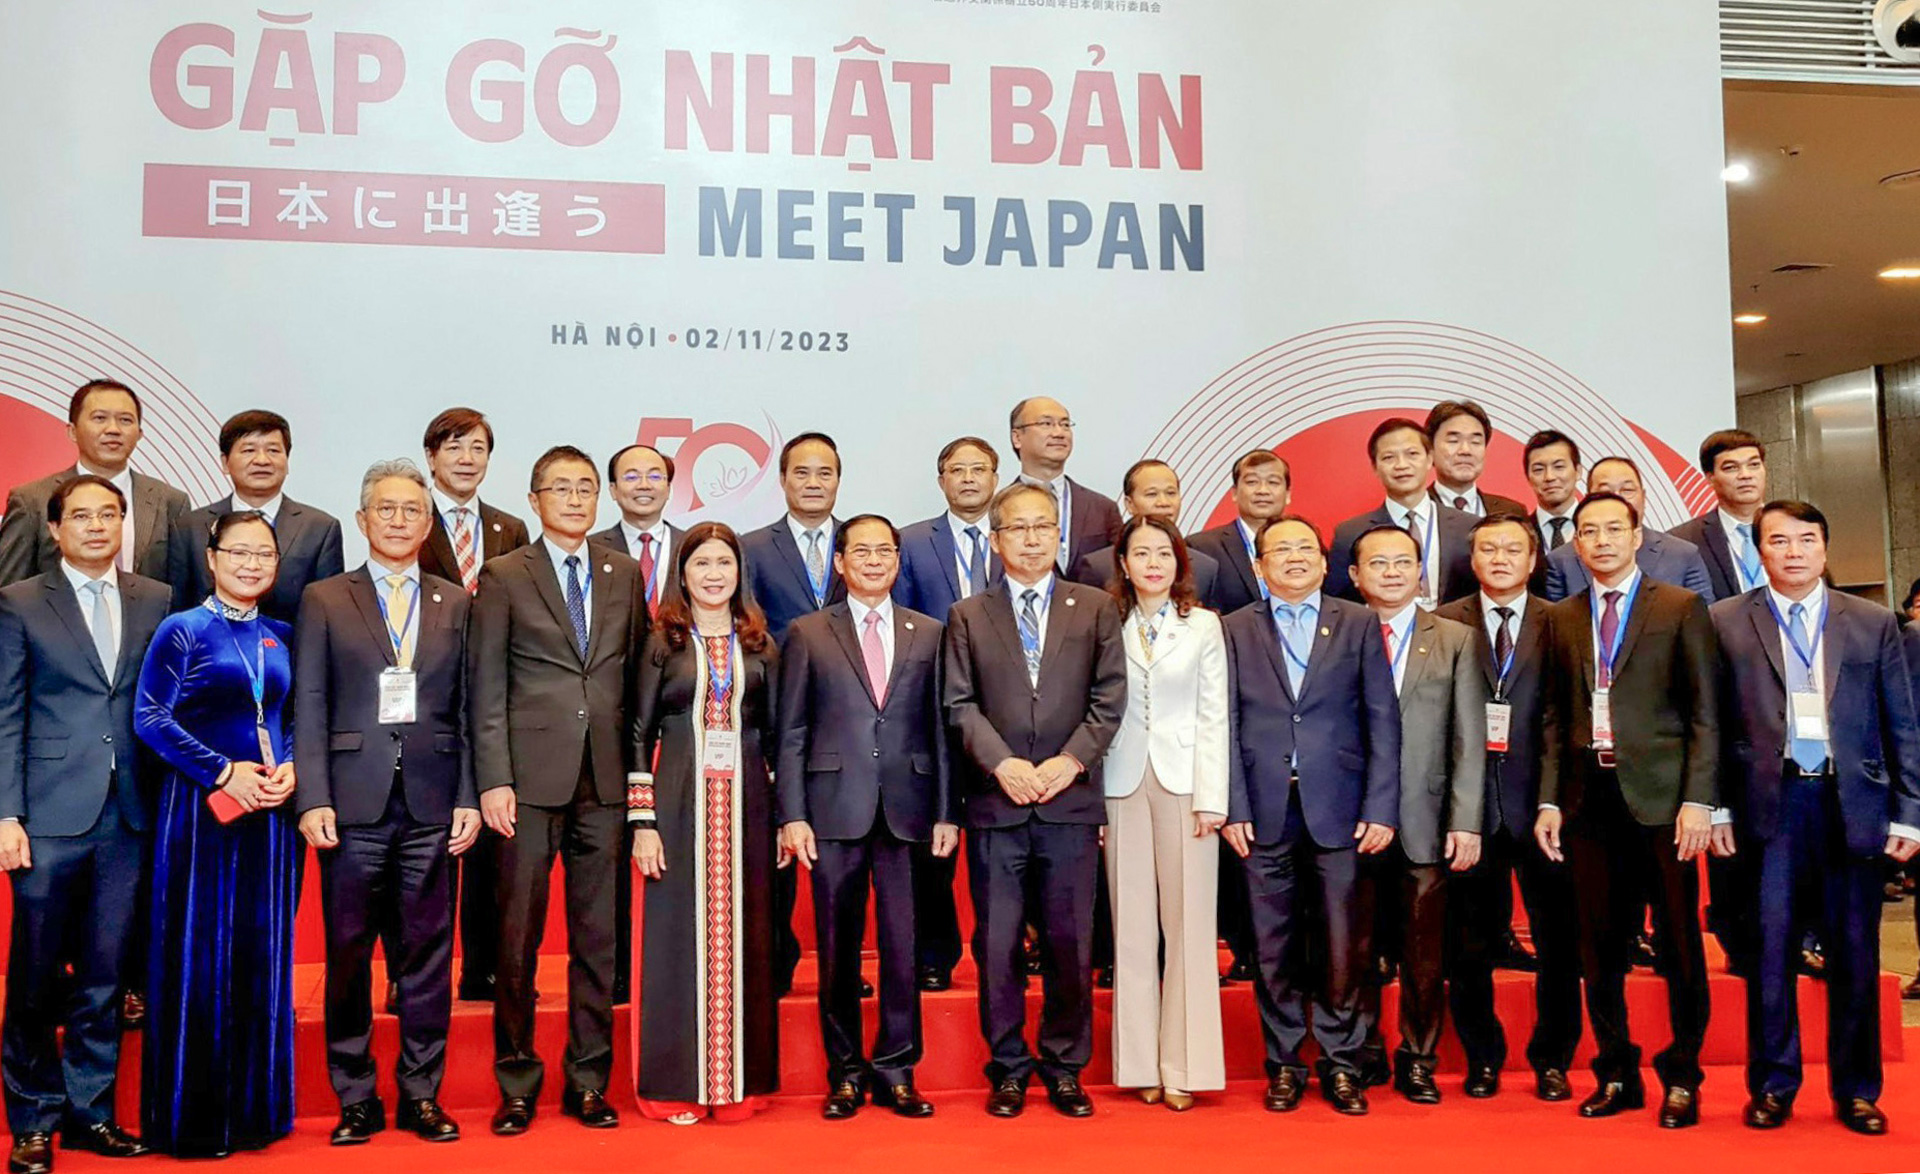 Phó Chủ tịch UBND tỉnh Lâm Đồng Phạm S tham dự Hội nghị “Gặp gỡ Nhật Bản”